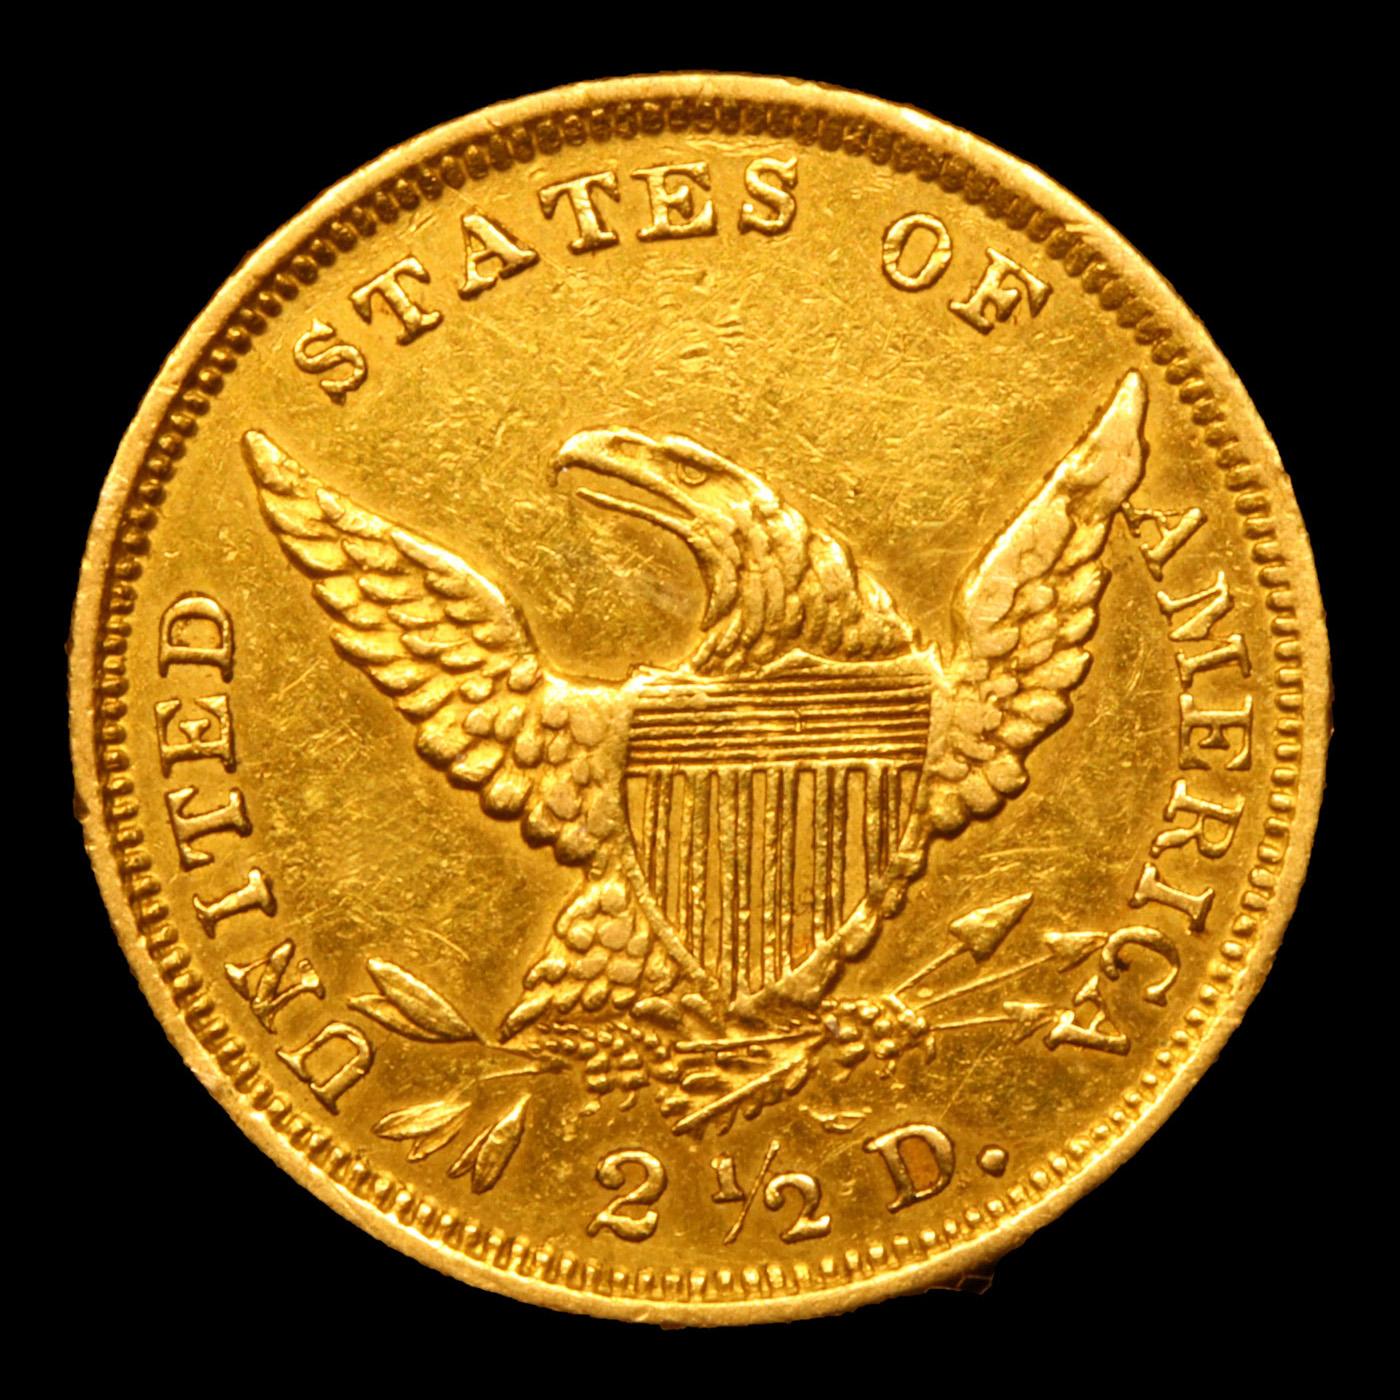 ***Auction Highlight*** 1839-d HM-2 R-4 Gold Classic Head Quarter Eagle $2 1/2 Graded au58 details B